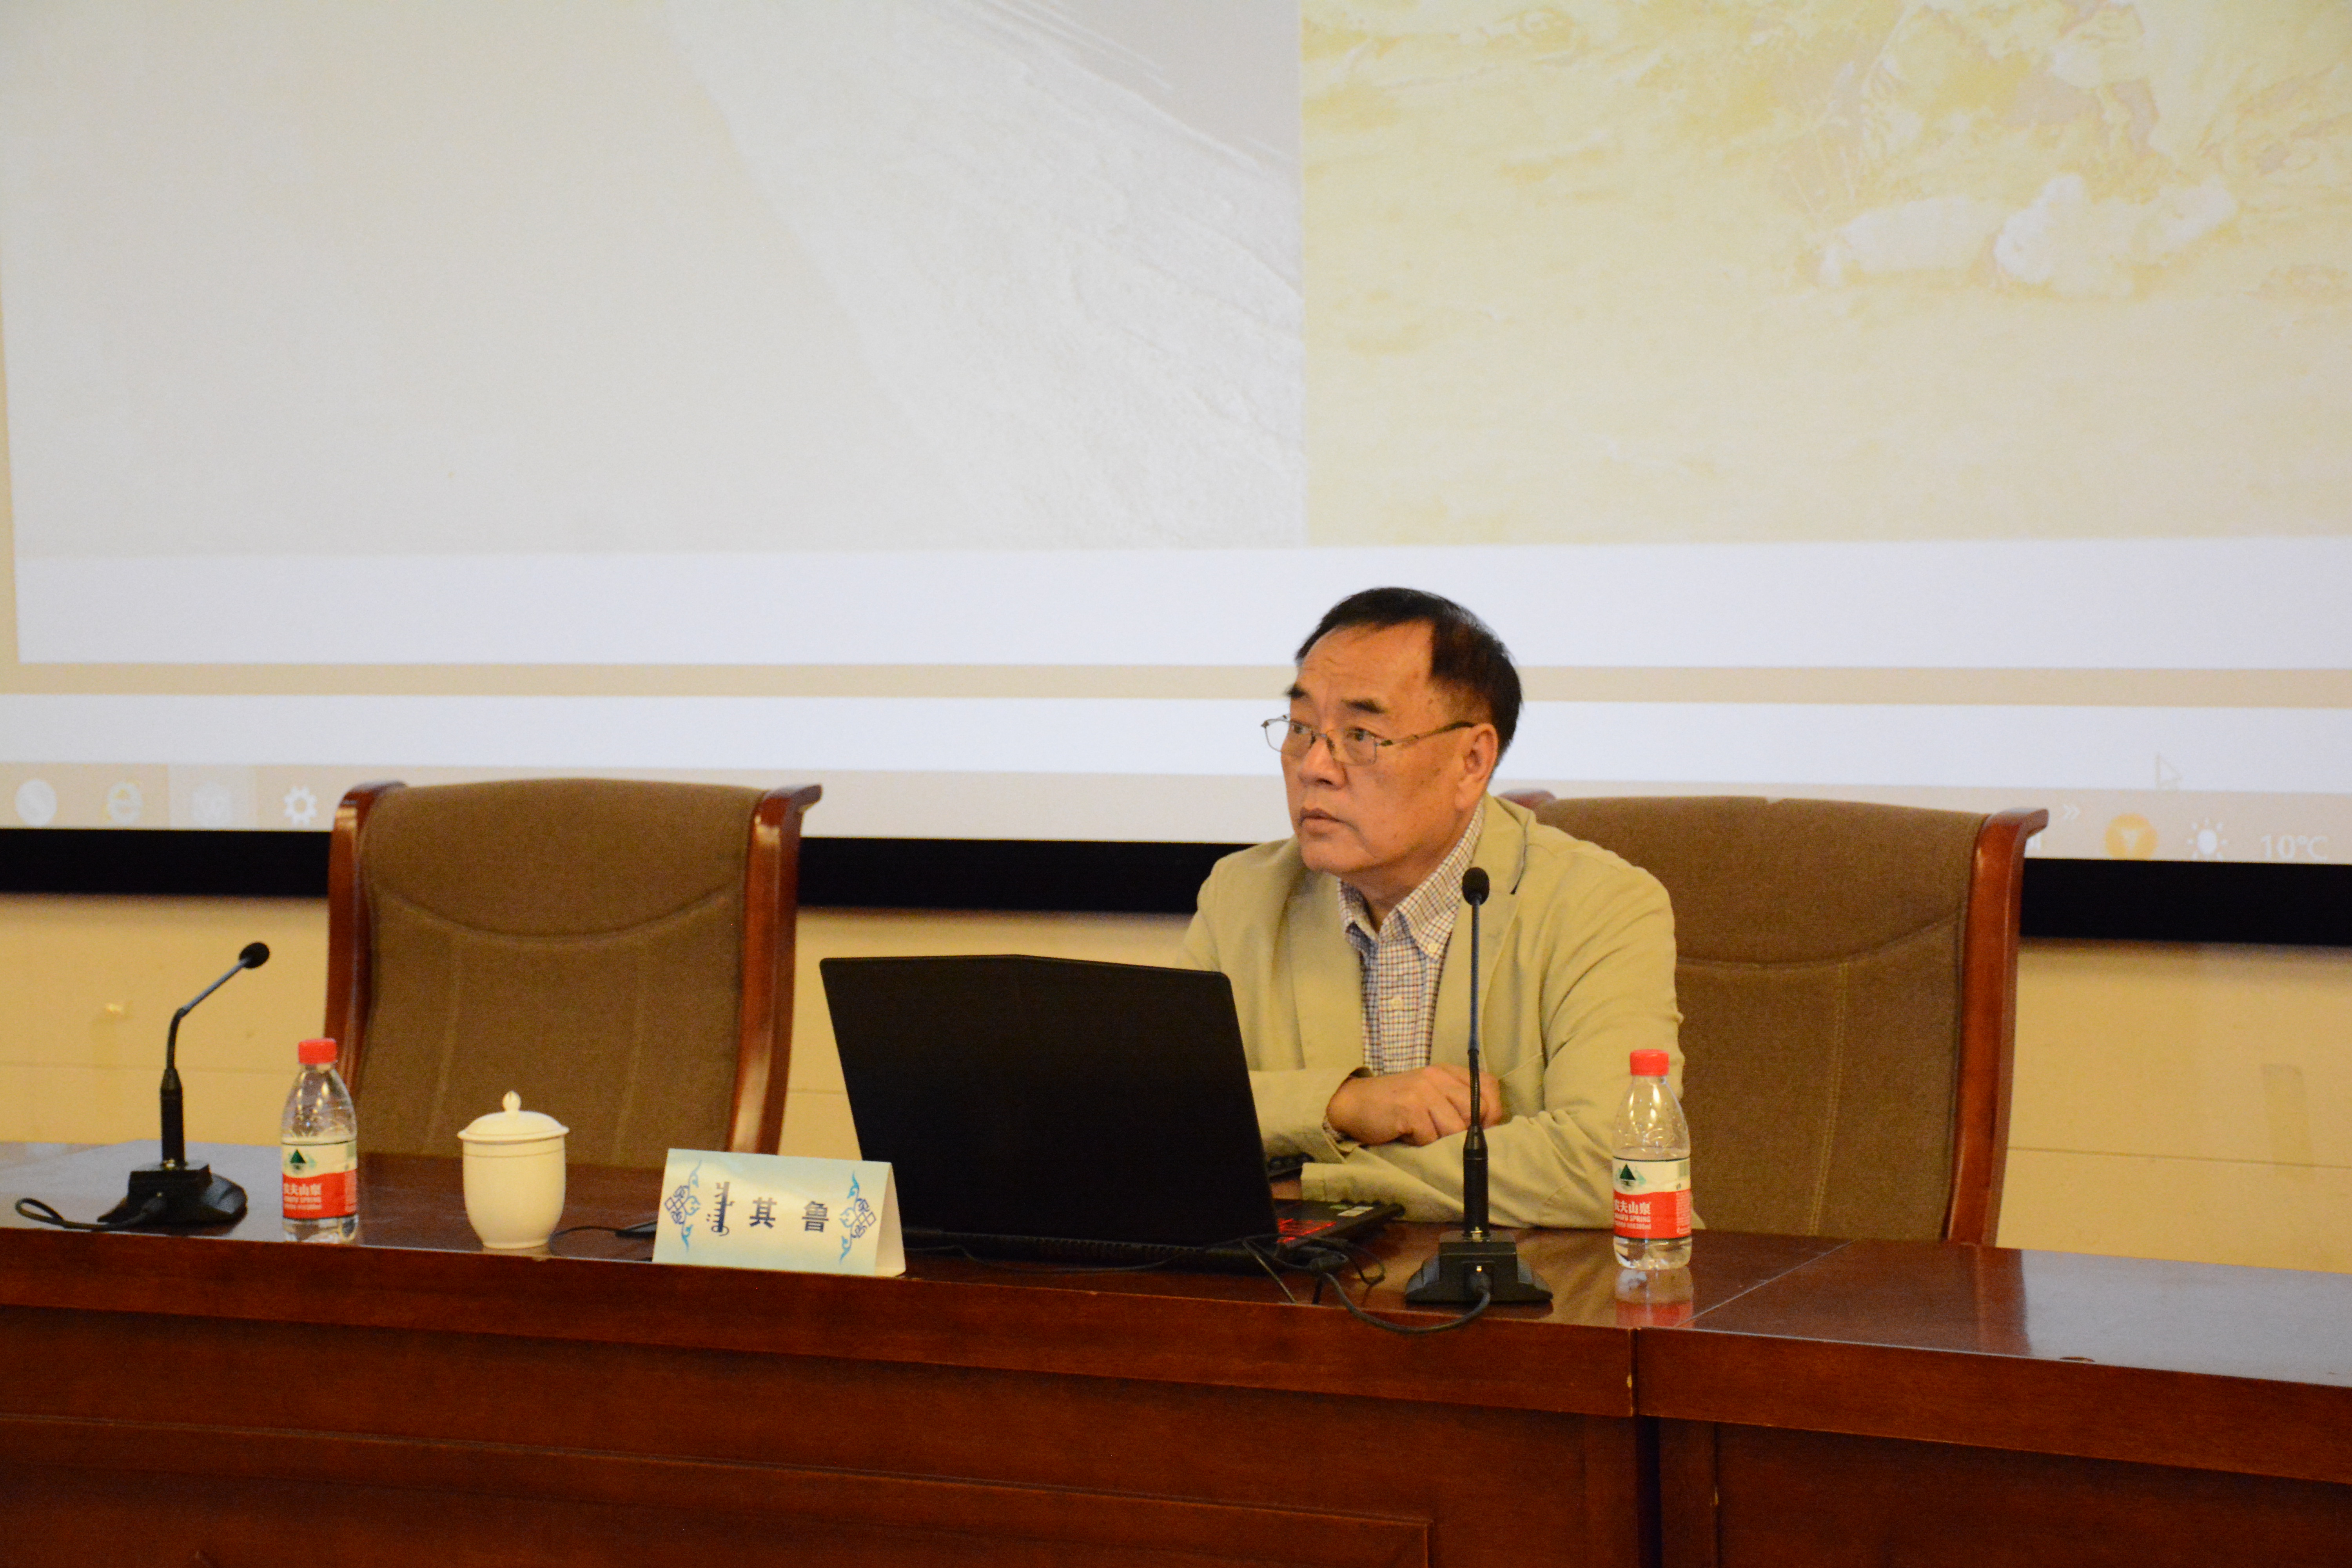 《名家大讲堂》活动邀请北京大学其鲁教授作专题讲座